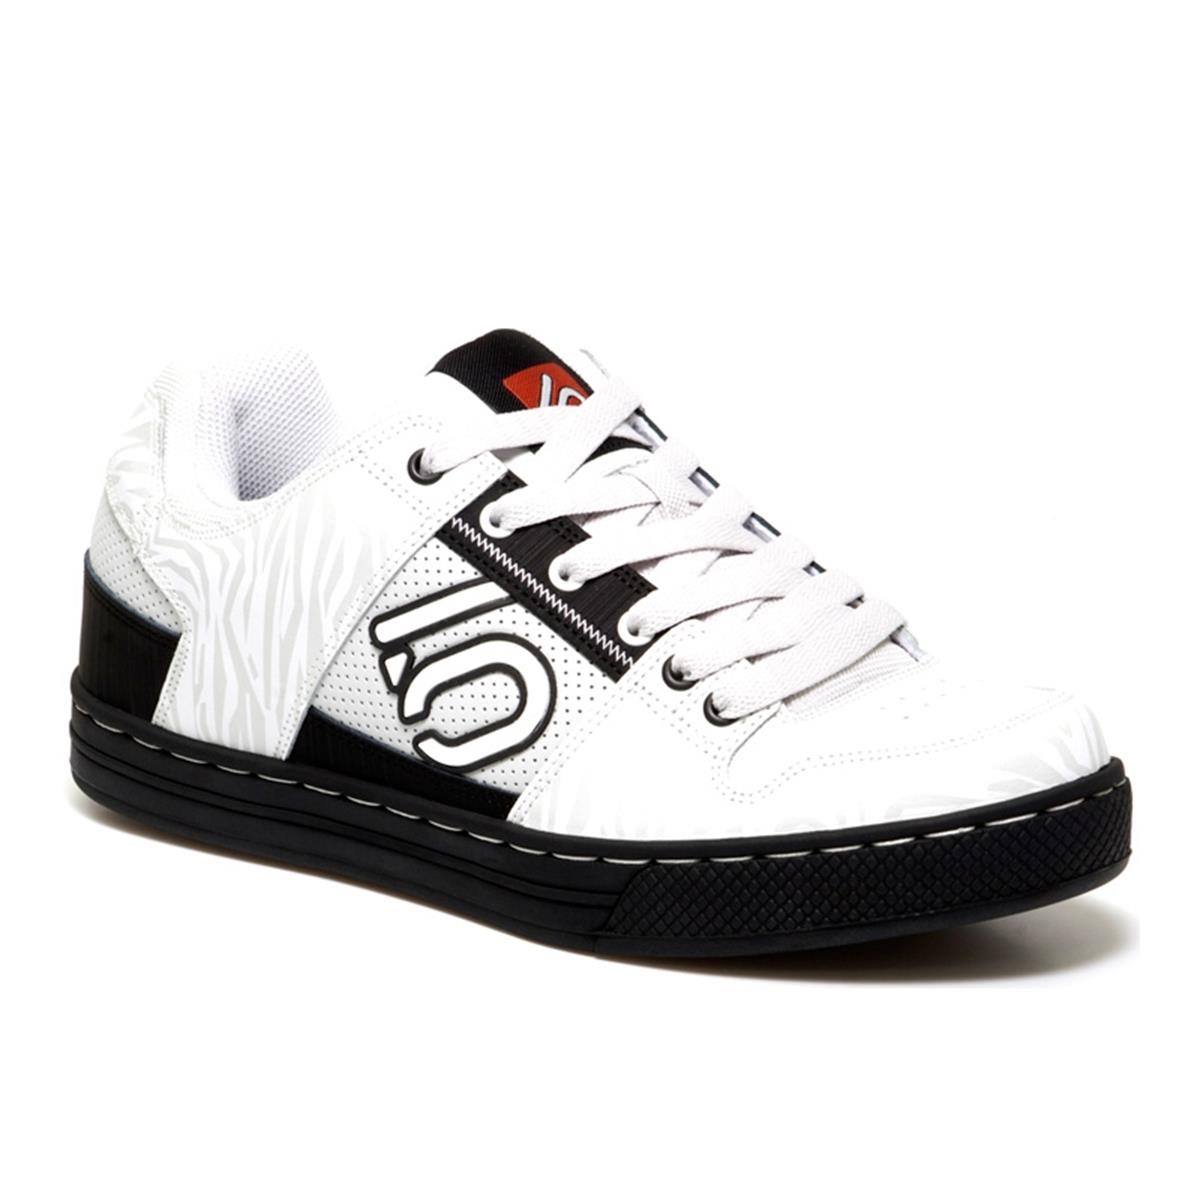 Freizeit/Streetwear Bekleidung-Schuhe - Five Ten Schuhe Freerider White Tiger